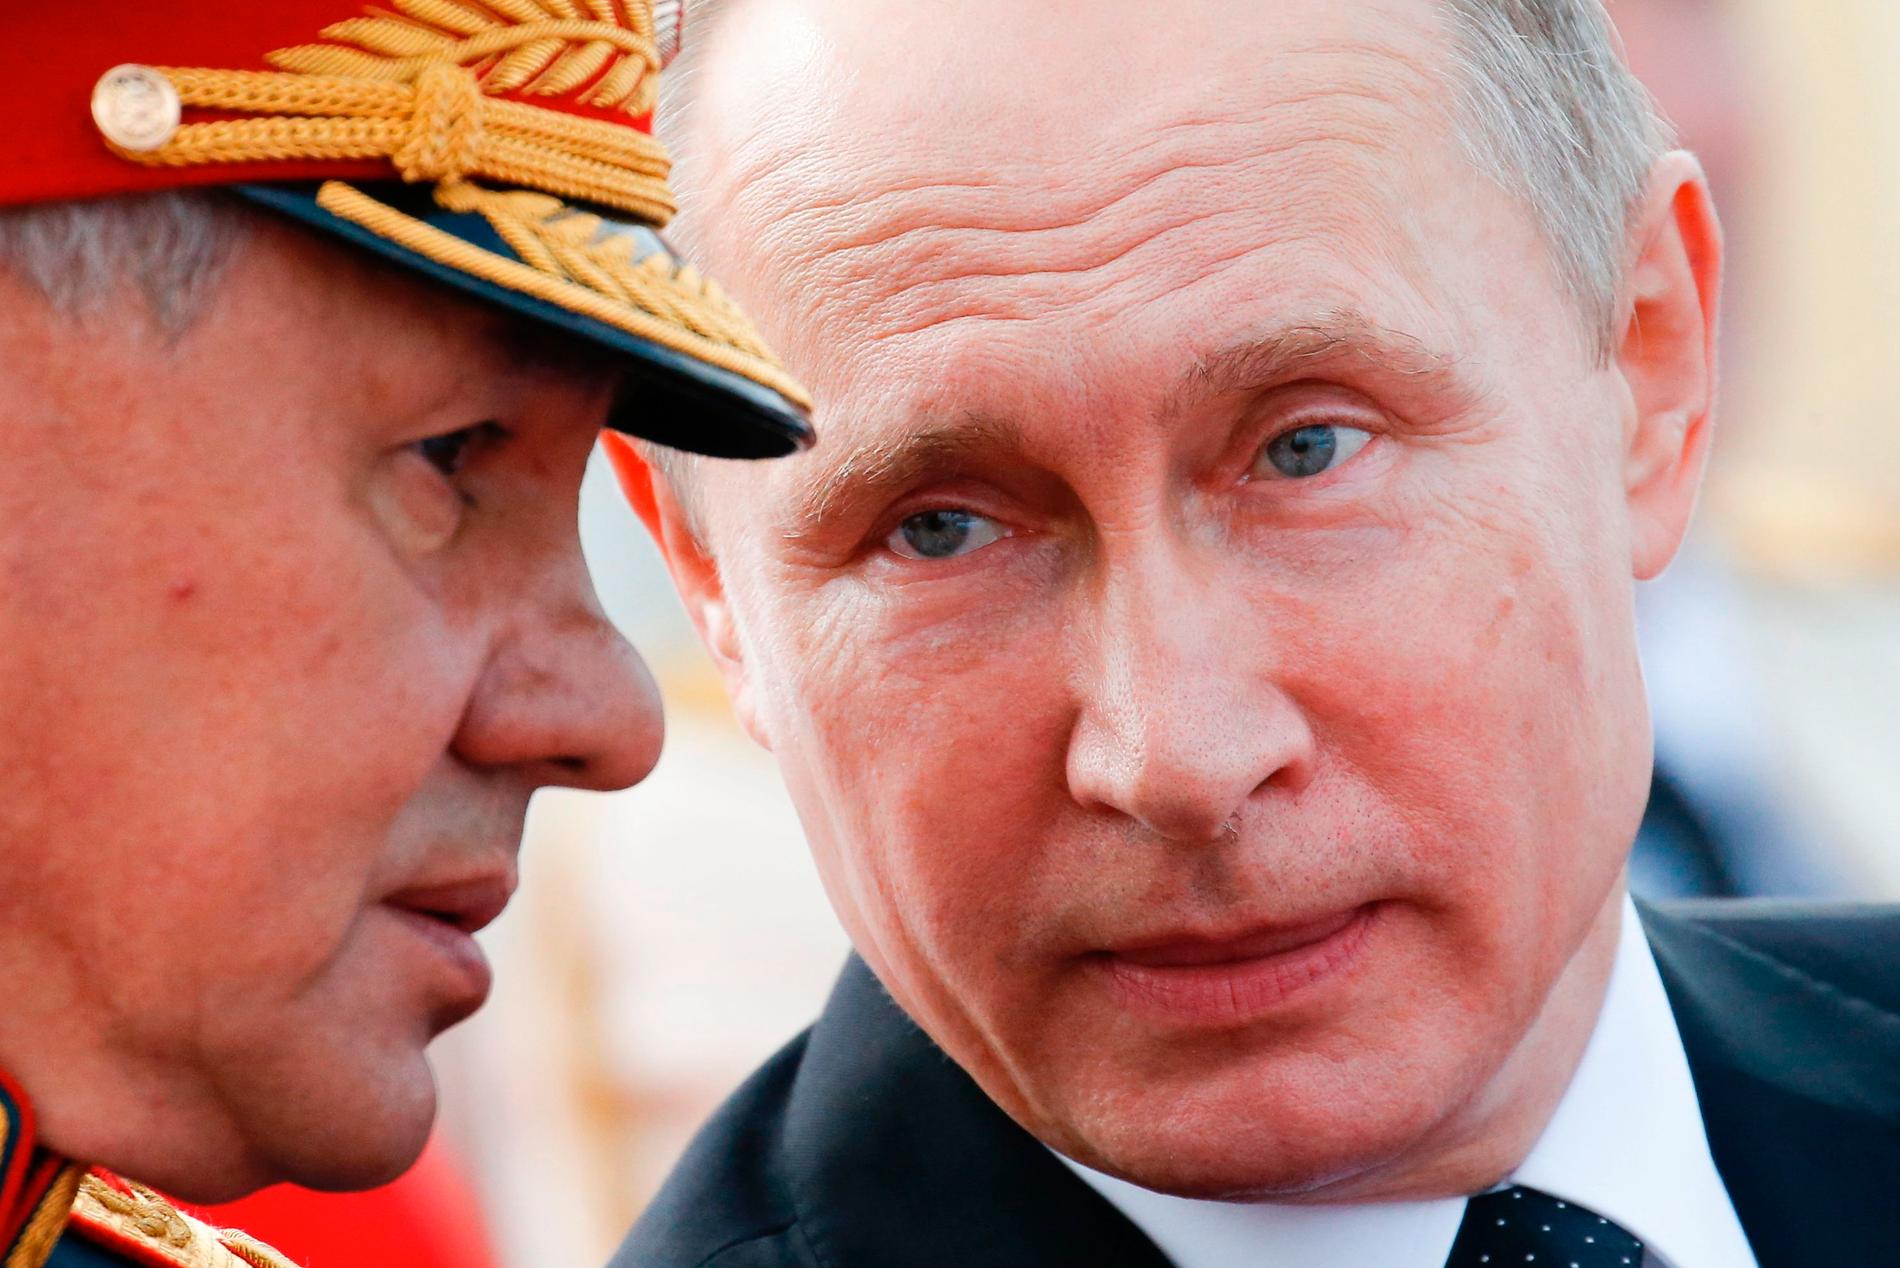 Fughe di notizie: è così che Putin assicurerà la sua influenza nei paesi vicini